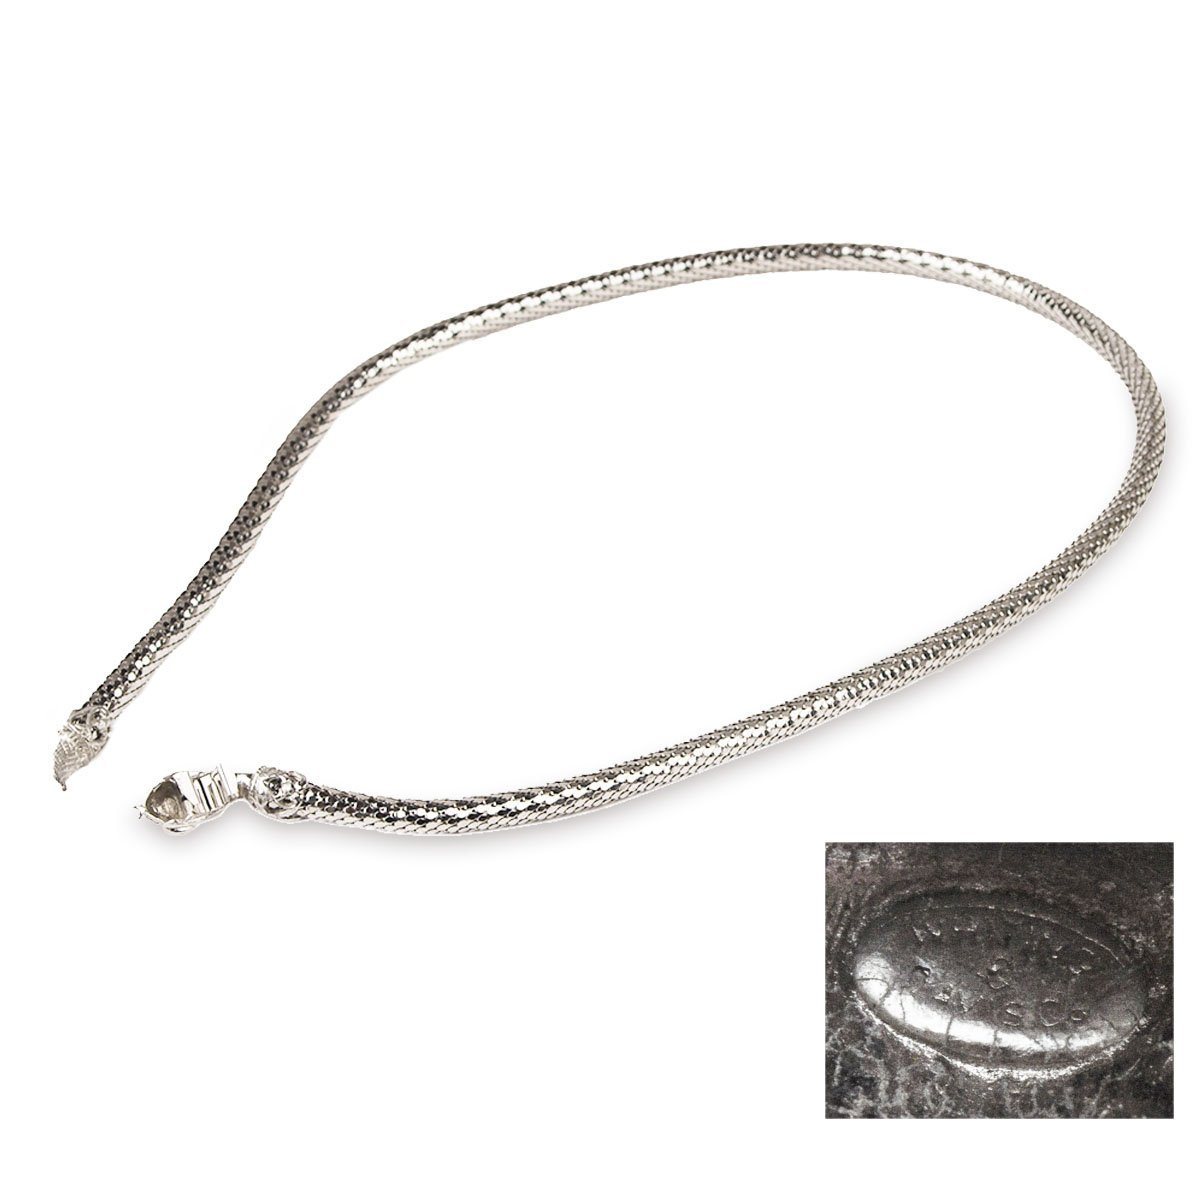 Whiting & Davis Snake Belt/Necklace, Silver Metal Mesh, adjustable